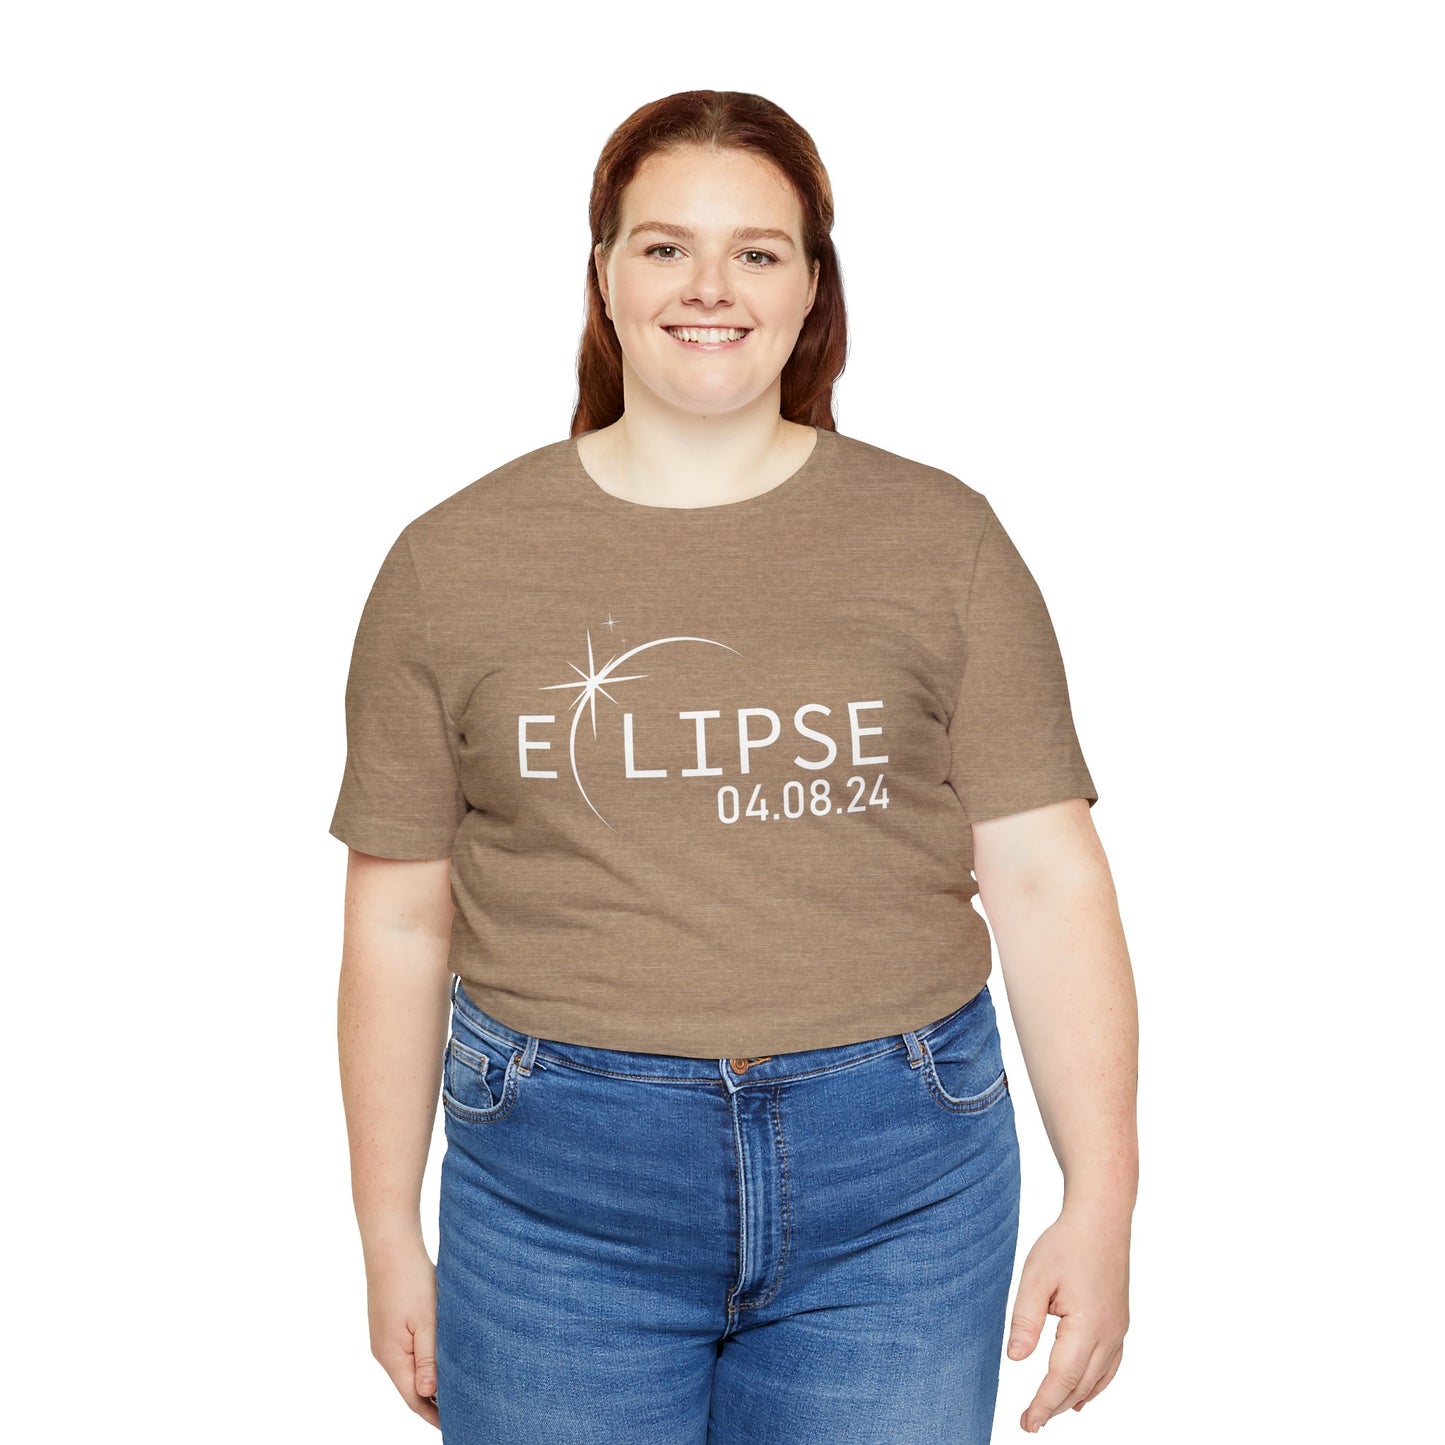 Eclipse 2024 - Jersey Short Sleeve T-Shirt